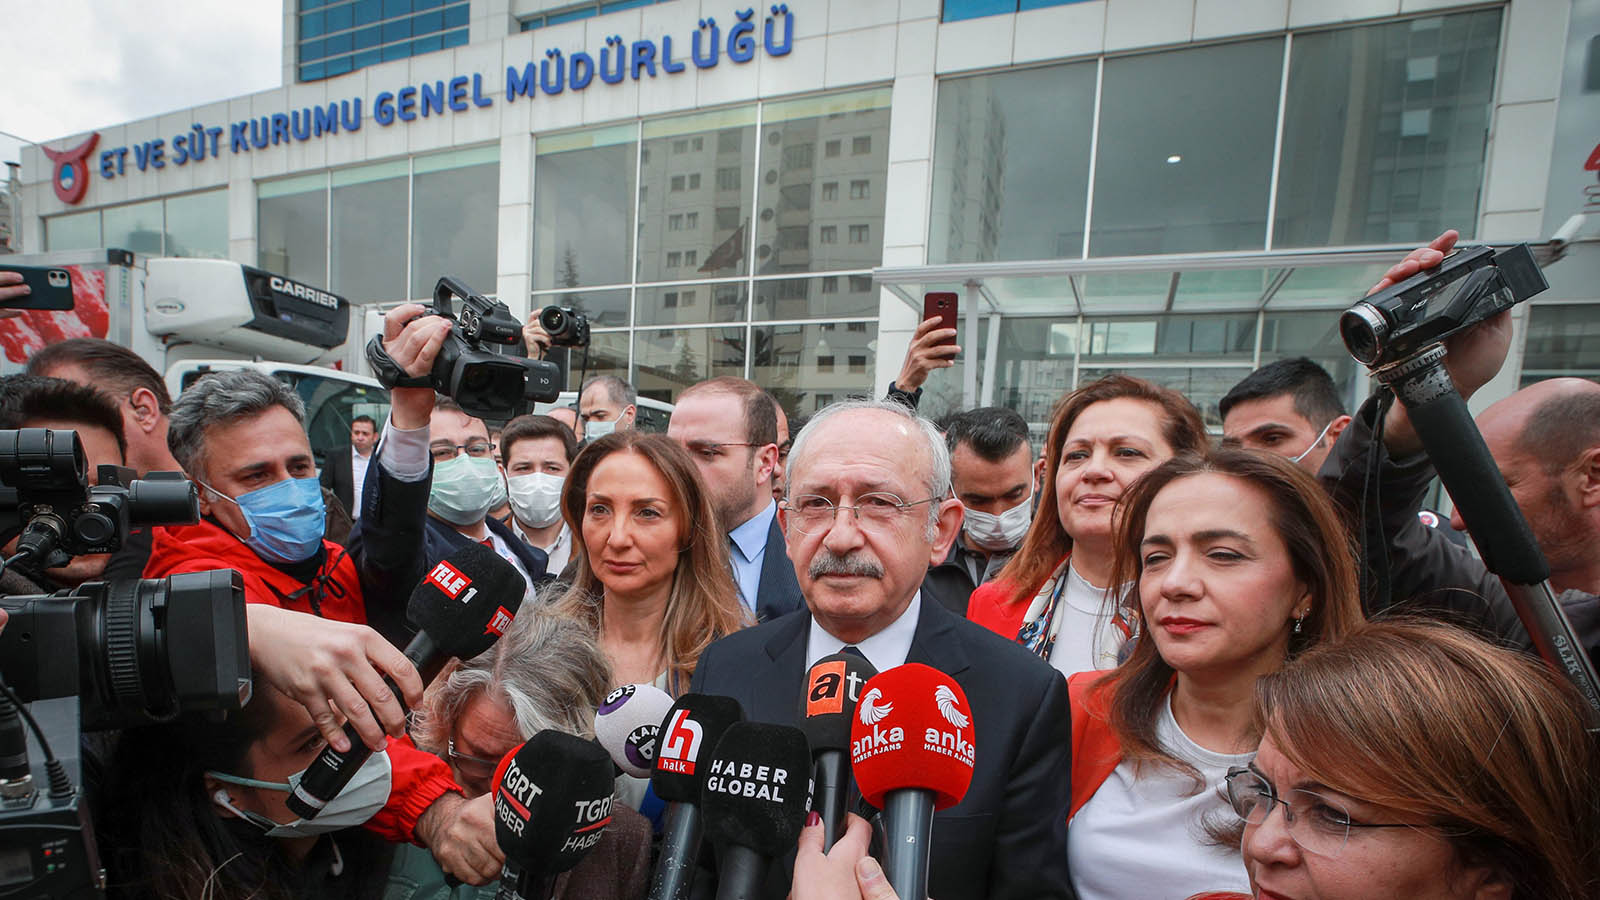 Et ve Süt Kurumu’ndan Kılıçdaroğlu açıklaması: Randevu talebine perşembe günü geri dönüş yapılmıştır